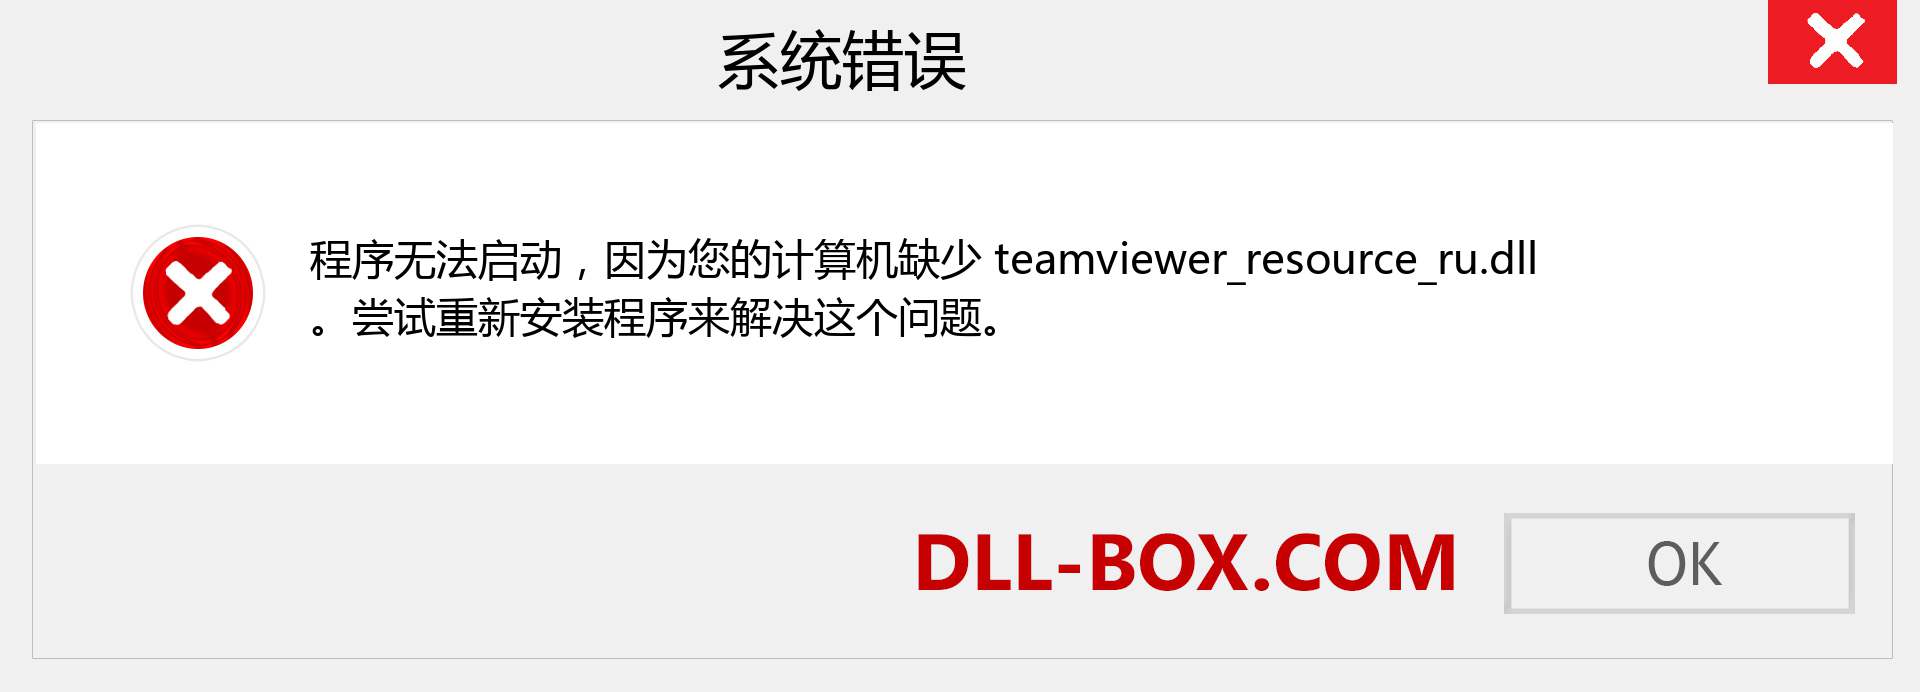 teamviewer_resource_ru.dll 文件丢失？。 适用于 Windows 7、8、10 的下载 - 修复 Windows、照片、图像上的 teamviewer_resource_ru dll 丢失错误